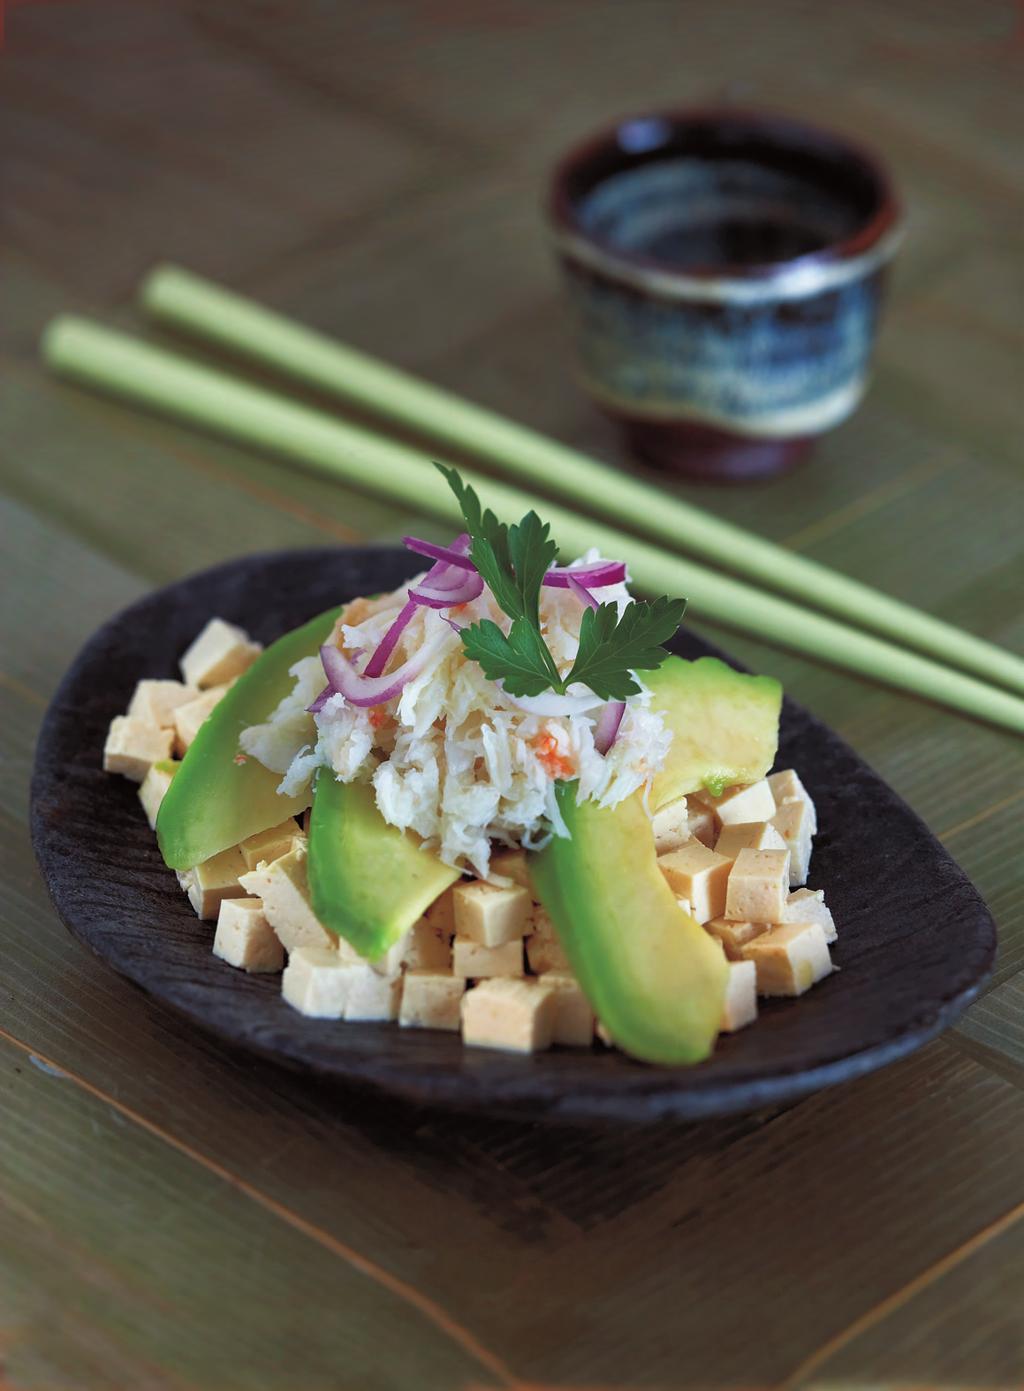 Il tofu morbido (silken) e l avocado cremoso hanno una deliziosa affinità, che viene messa in evidenza dal condimento a base di wasabi.